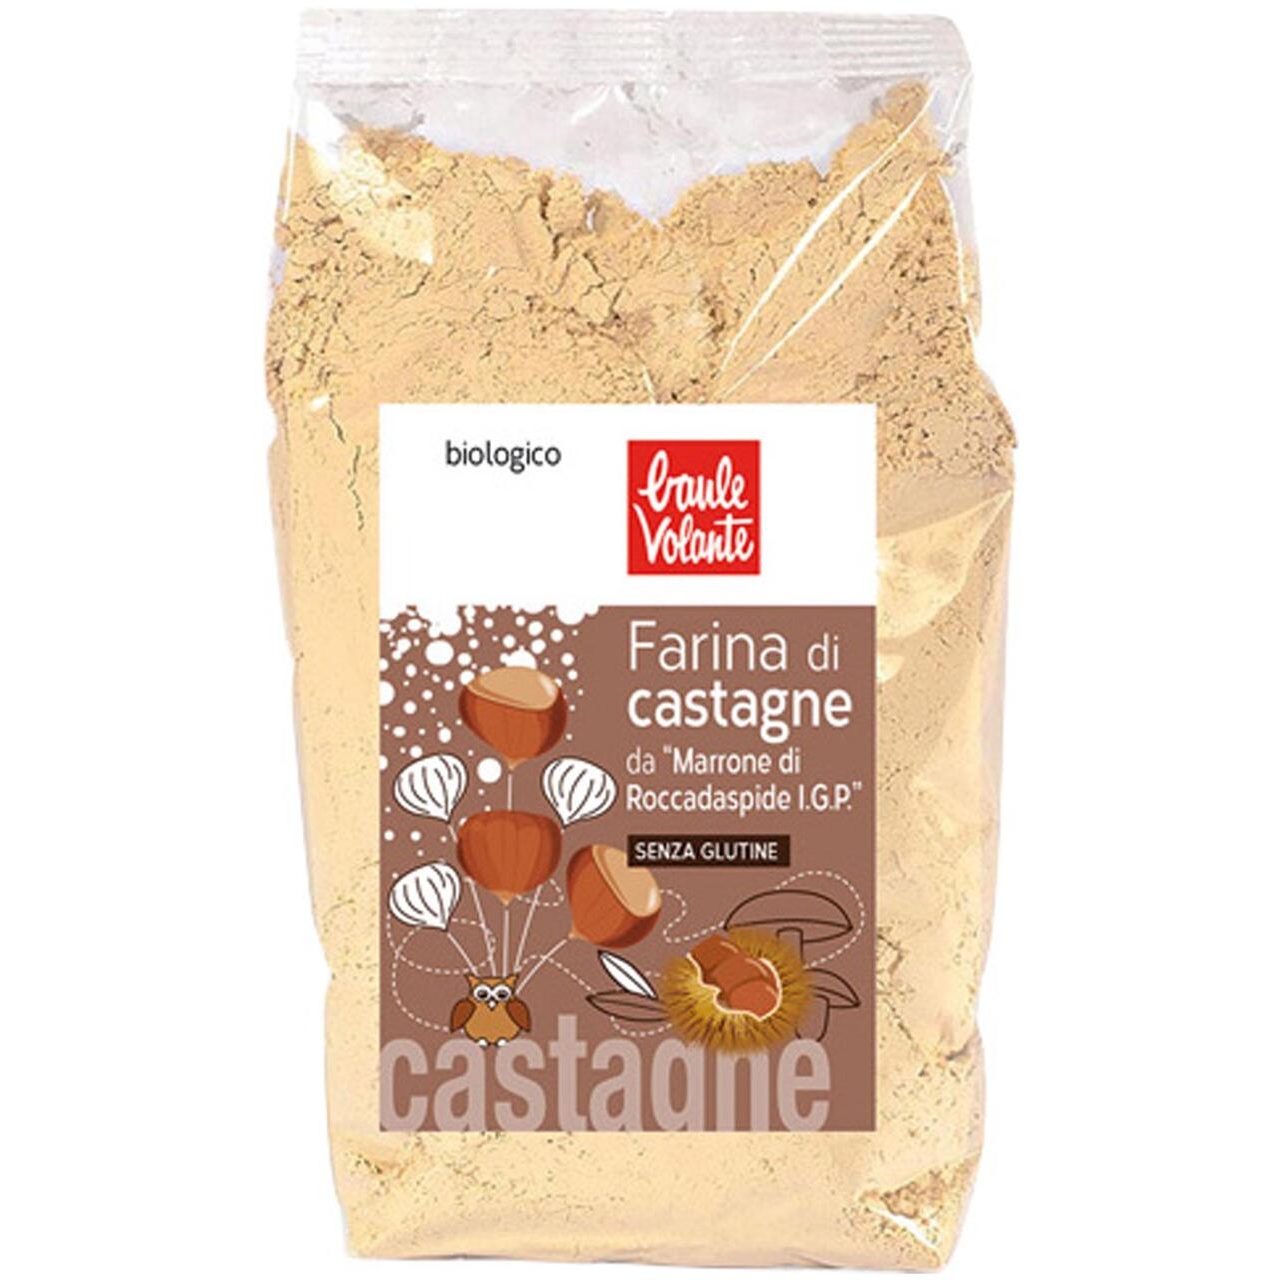 Farina di castagne 100% “marrone di roccadaspide igp”